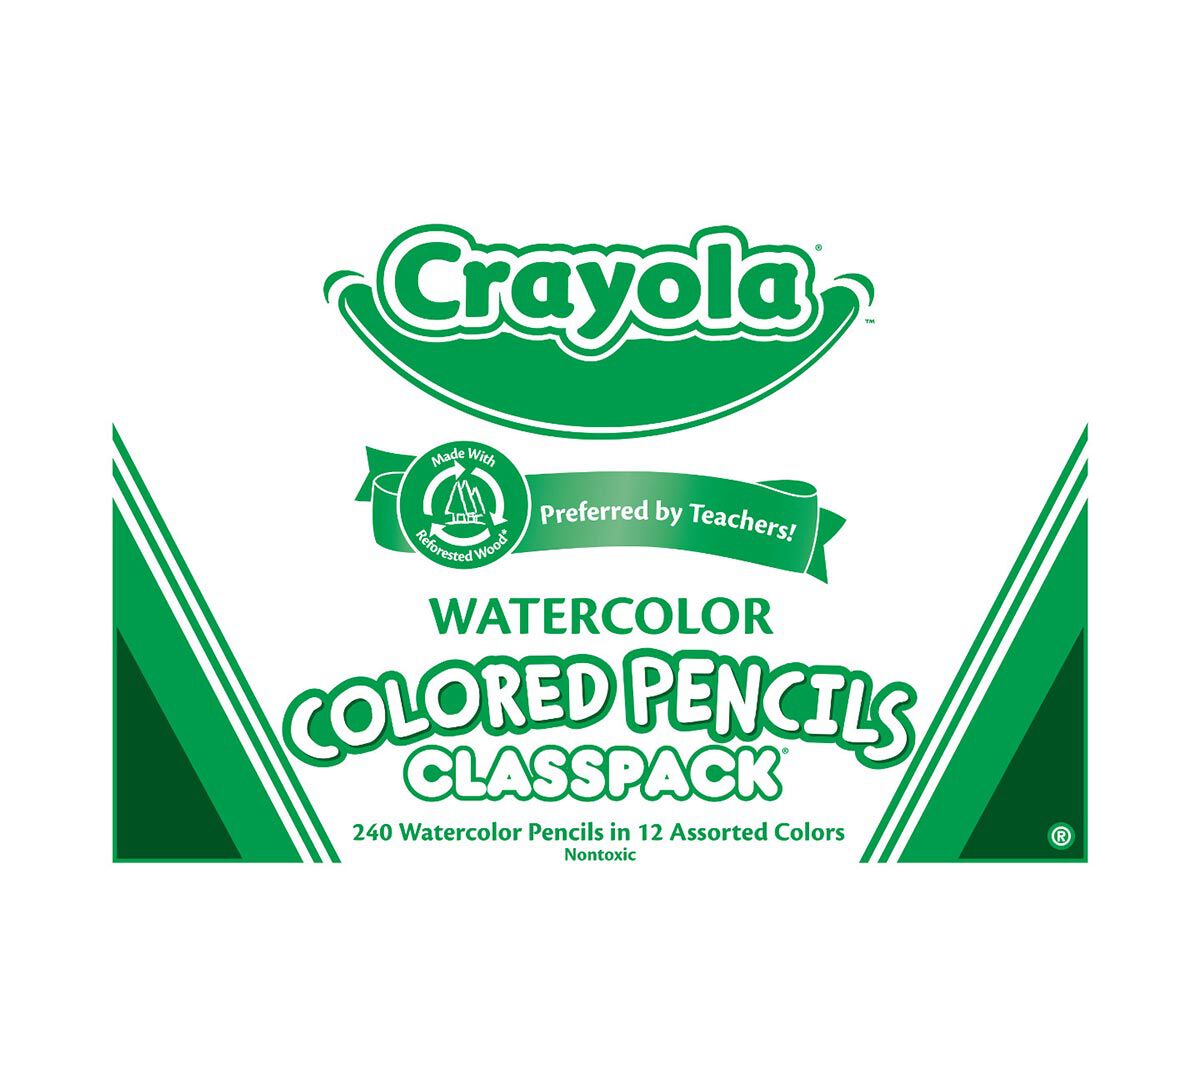 Watercolor Pencils Classpack, 240 Count, 12 Colors | Crayola